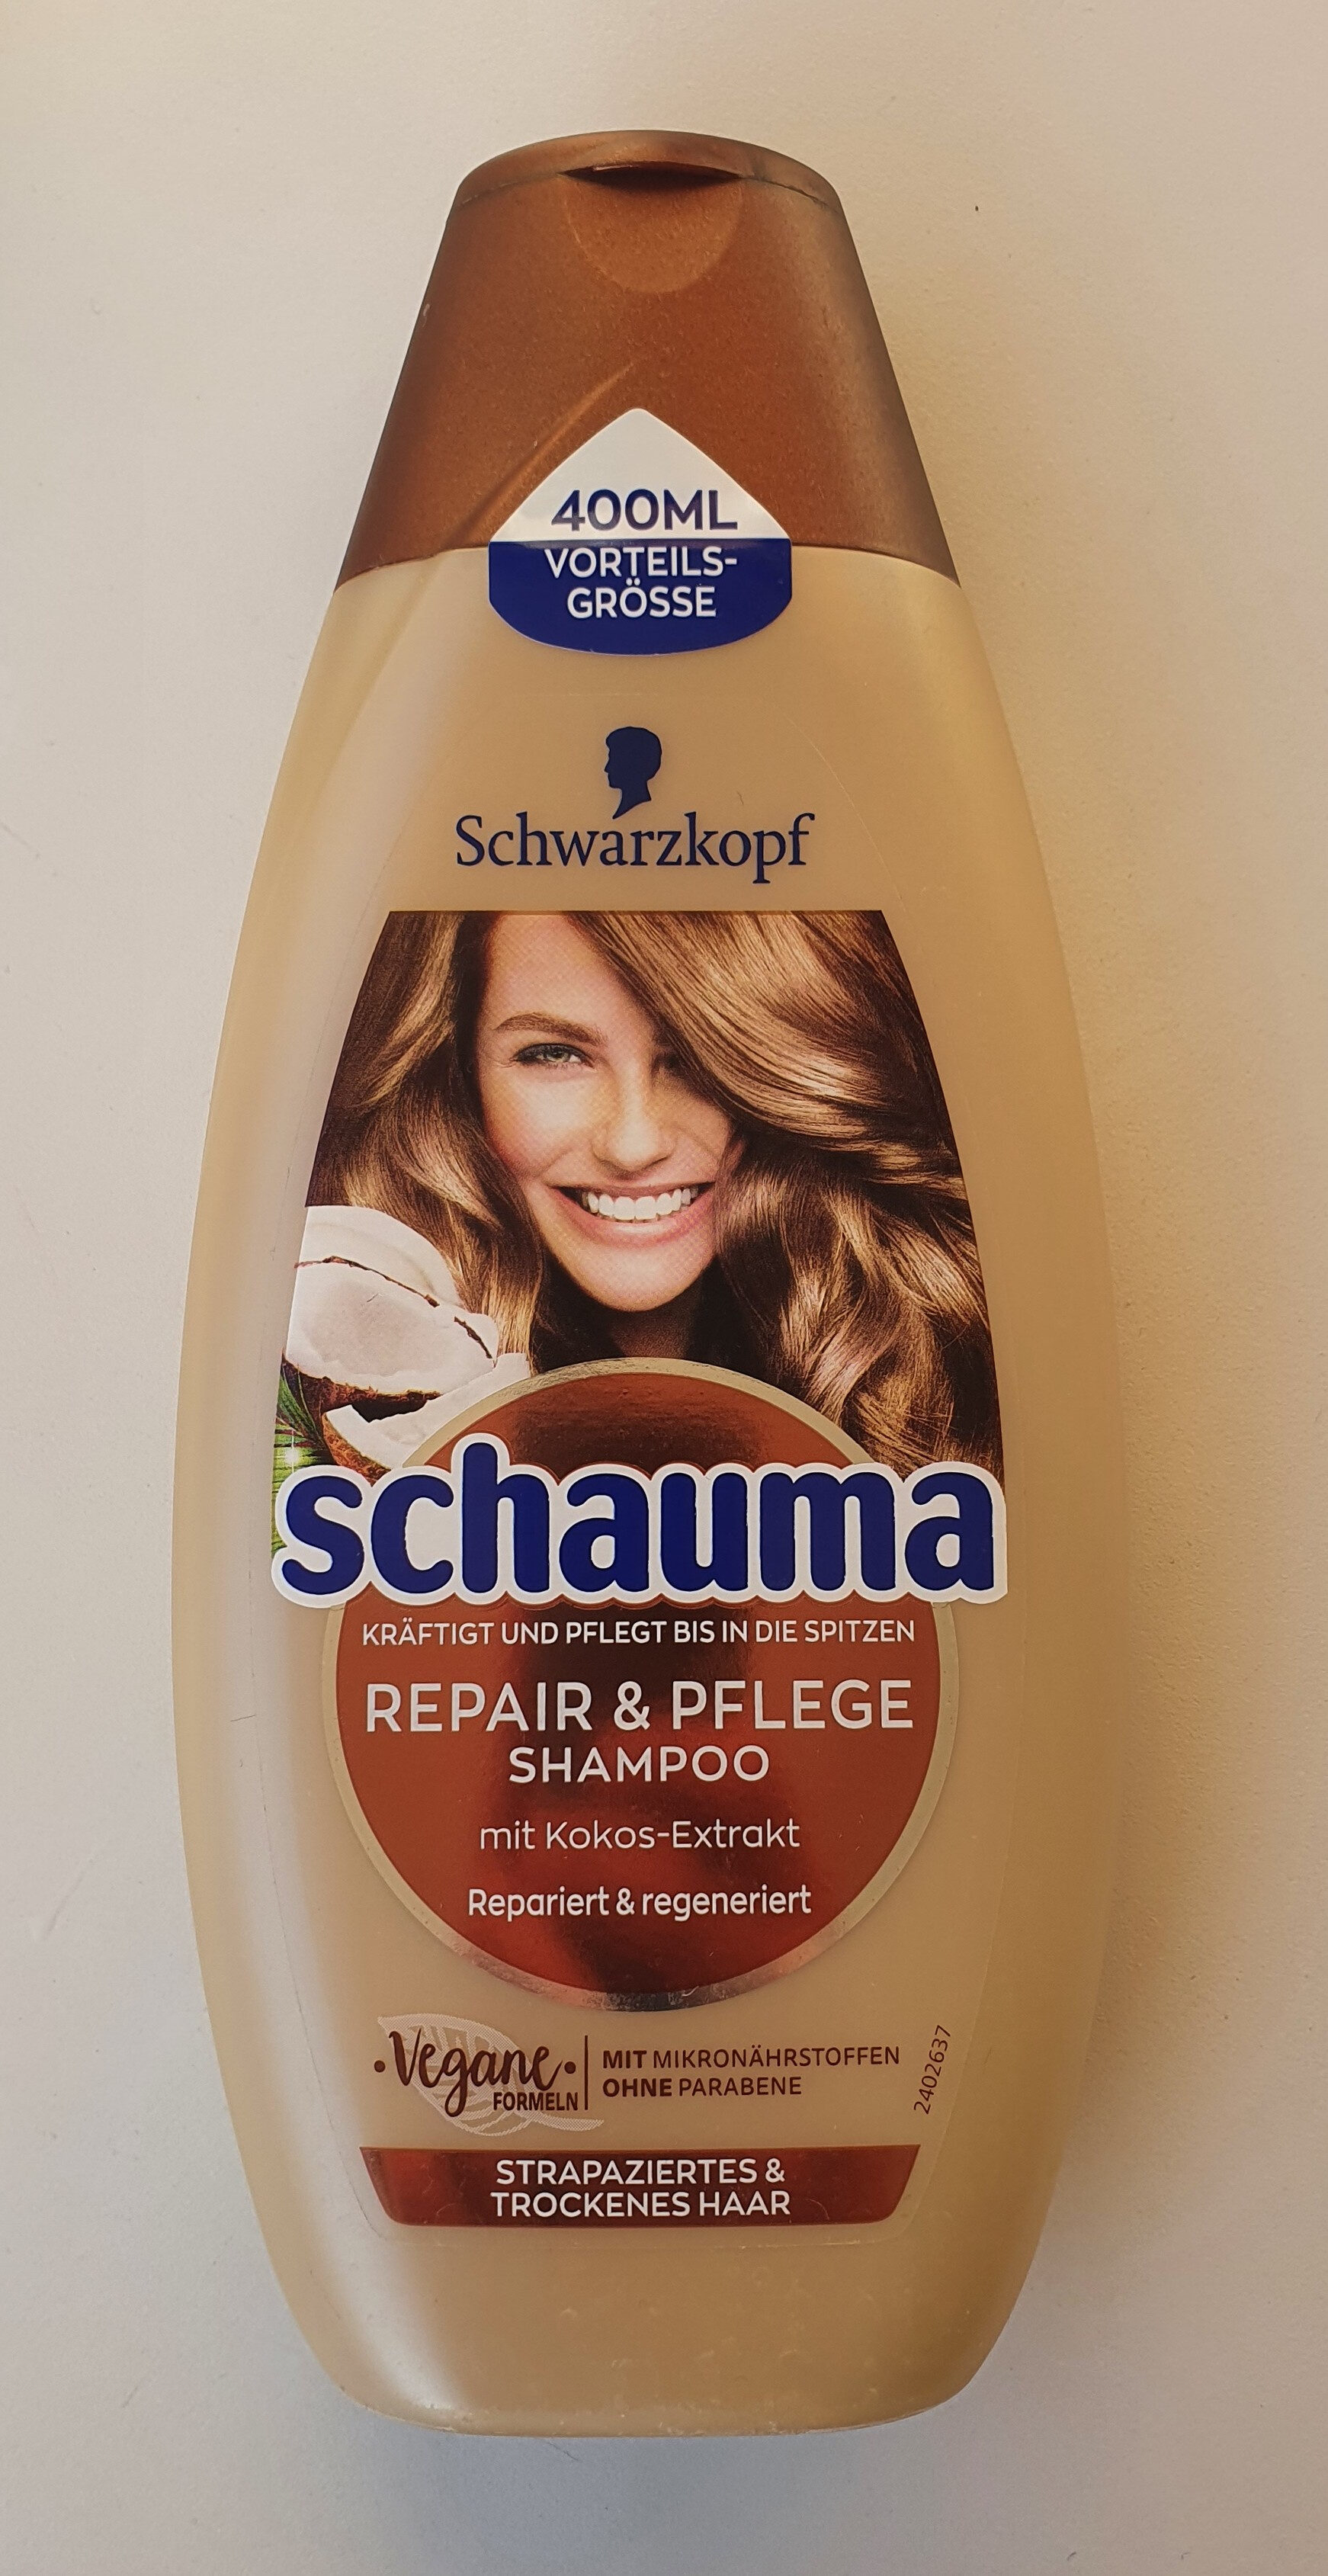 Repair & Pflege Shampoo mit Kokos-Extrakt - Produit - de